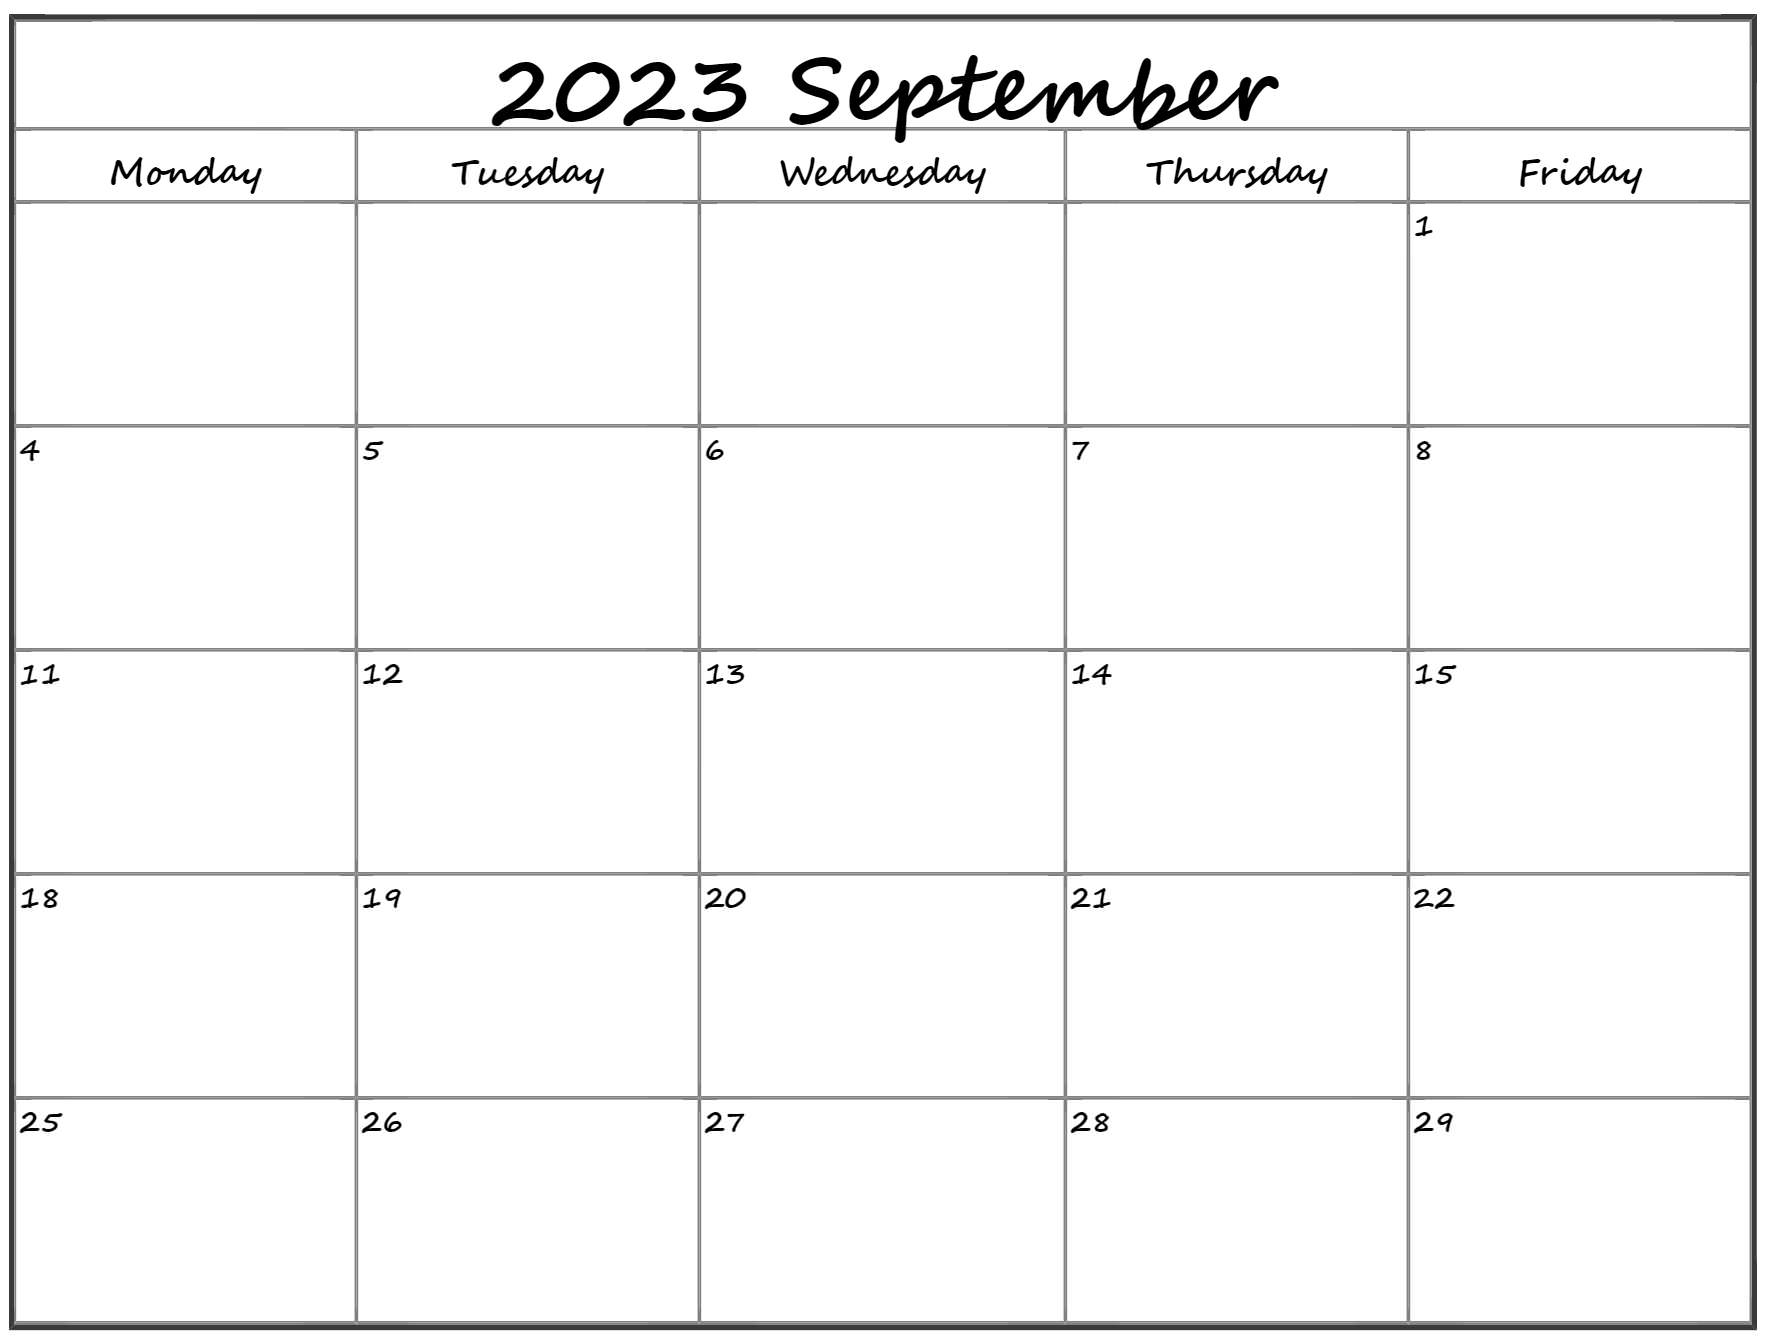 september-2023-calendar-starting-monday-get-calendar-2023-update